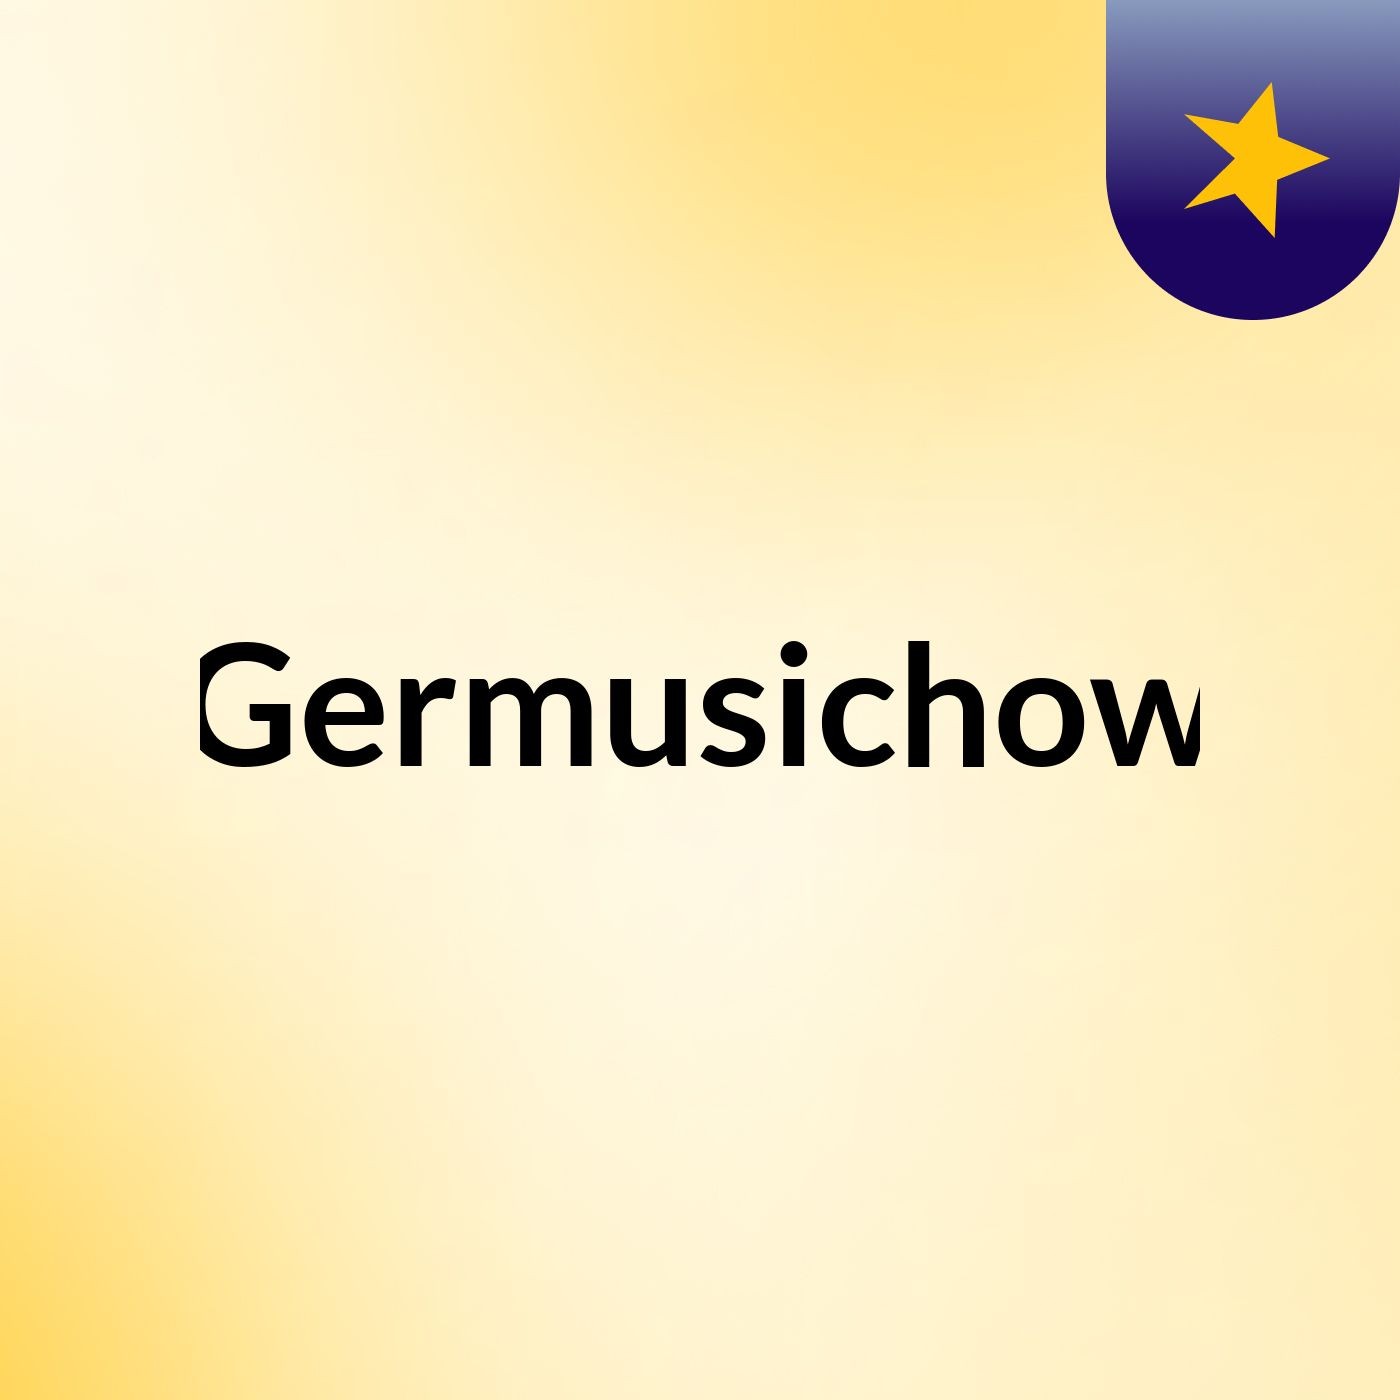 Germusichow